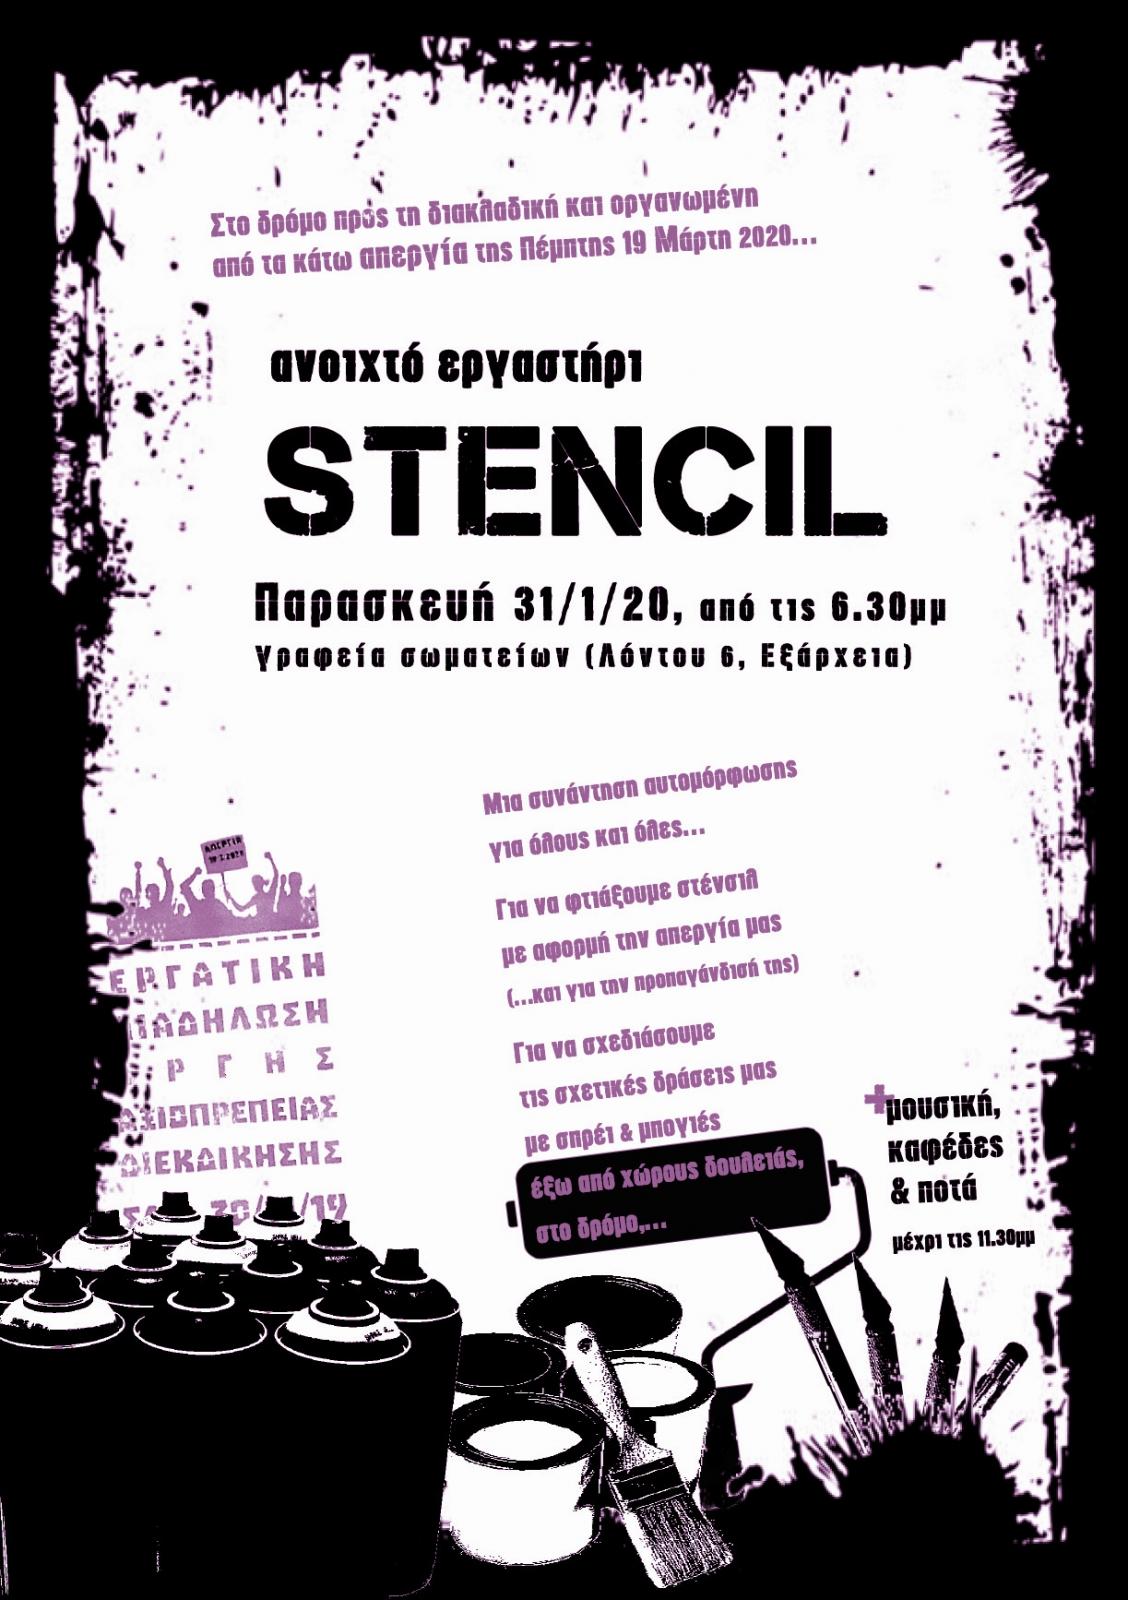 Αθήνα: Ανοιχτό εργαστήρι stencil για τη διακλαδική απεργία